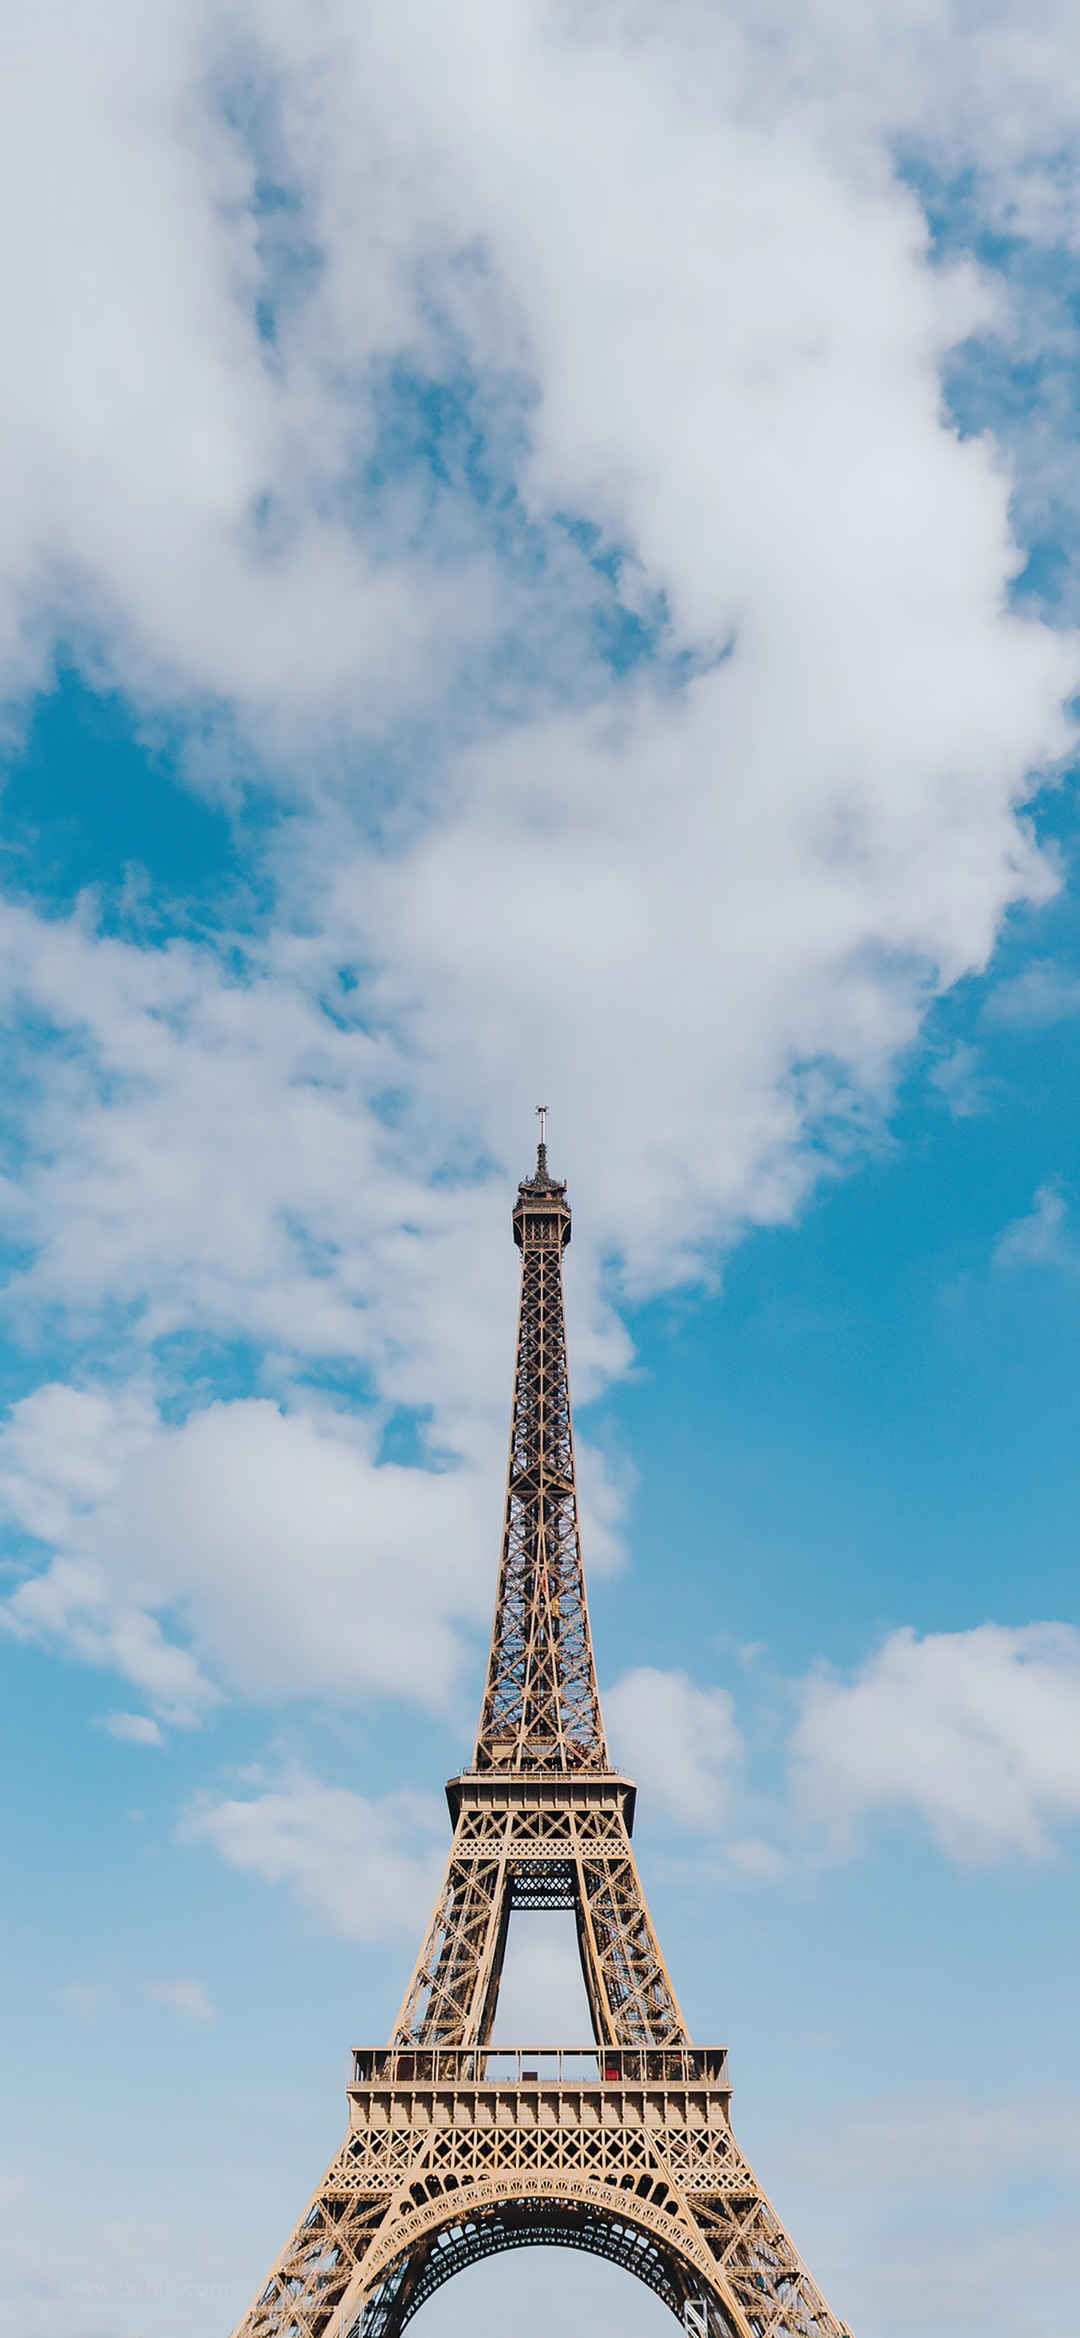 超高清巴黎铁塔风景手机壁纸